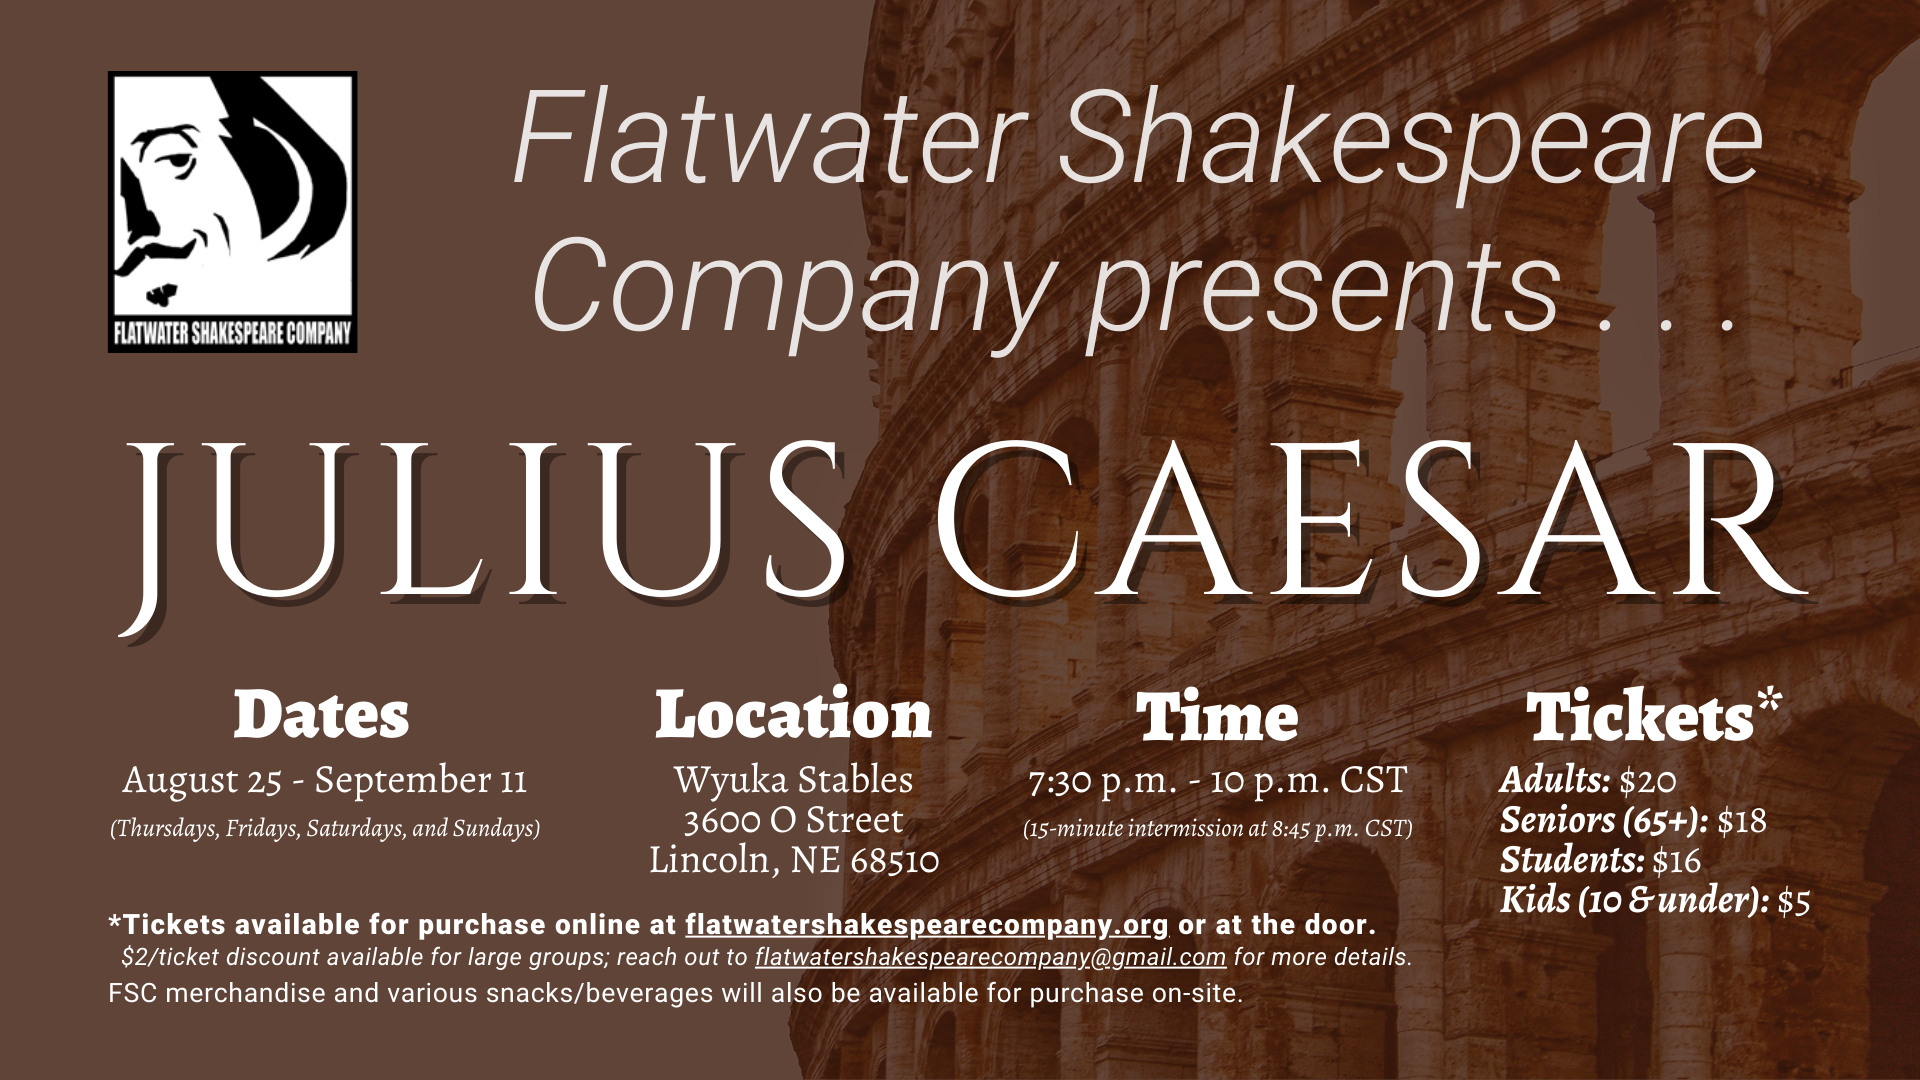 #11STU –– STUDENT: Sat. Sept. 10, 2022 | 7:30 p.m. - 10 p.m. CST | Wyuka Stables (Julius Caesar)